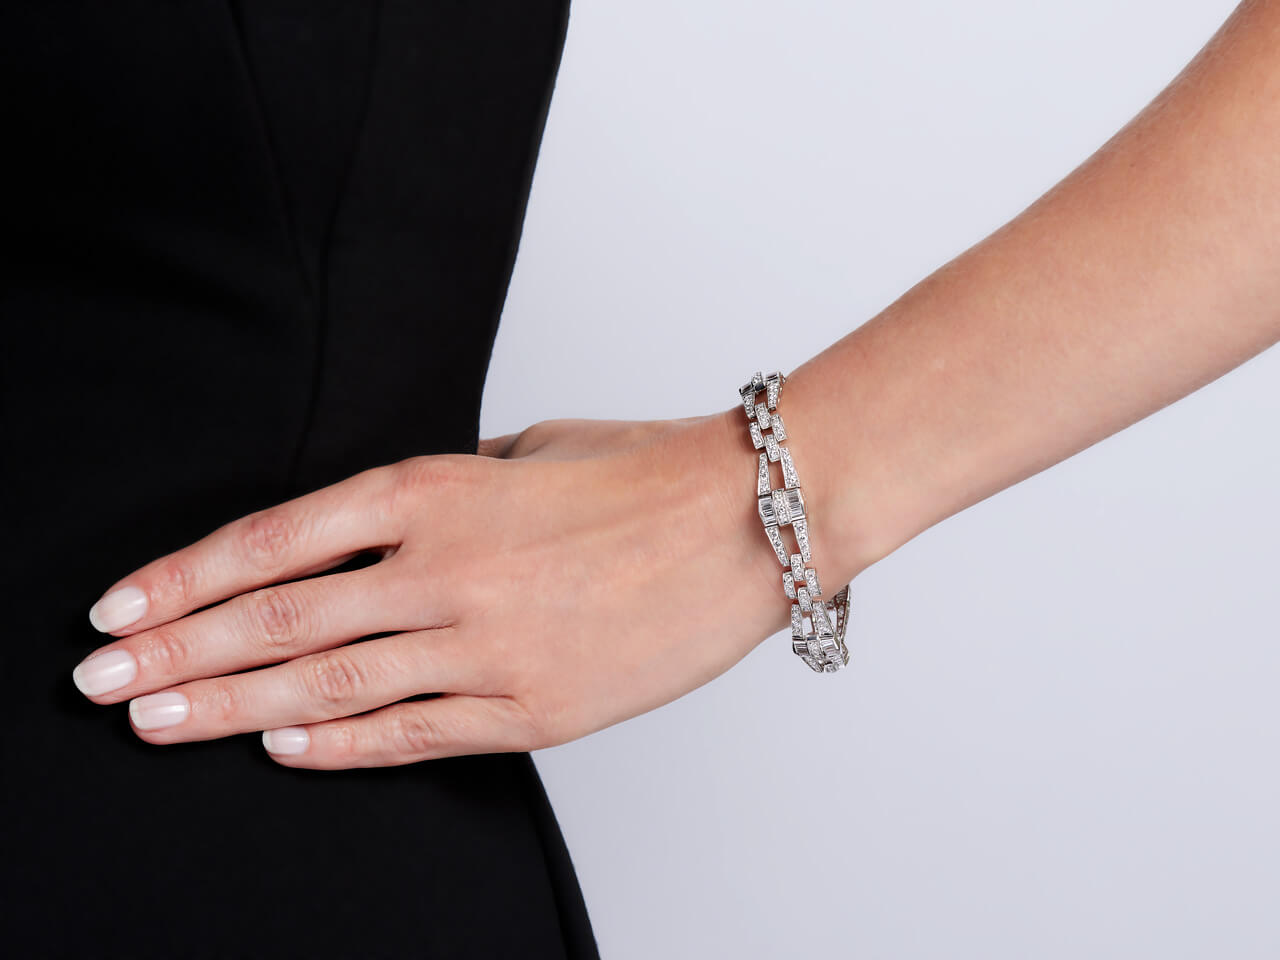 Bracelet embellished with Swarovski Crystal | Rosefield Official